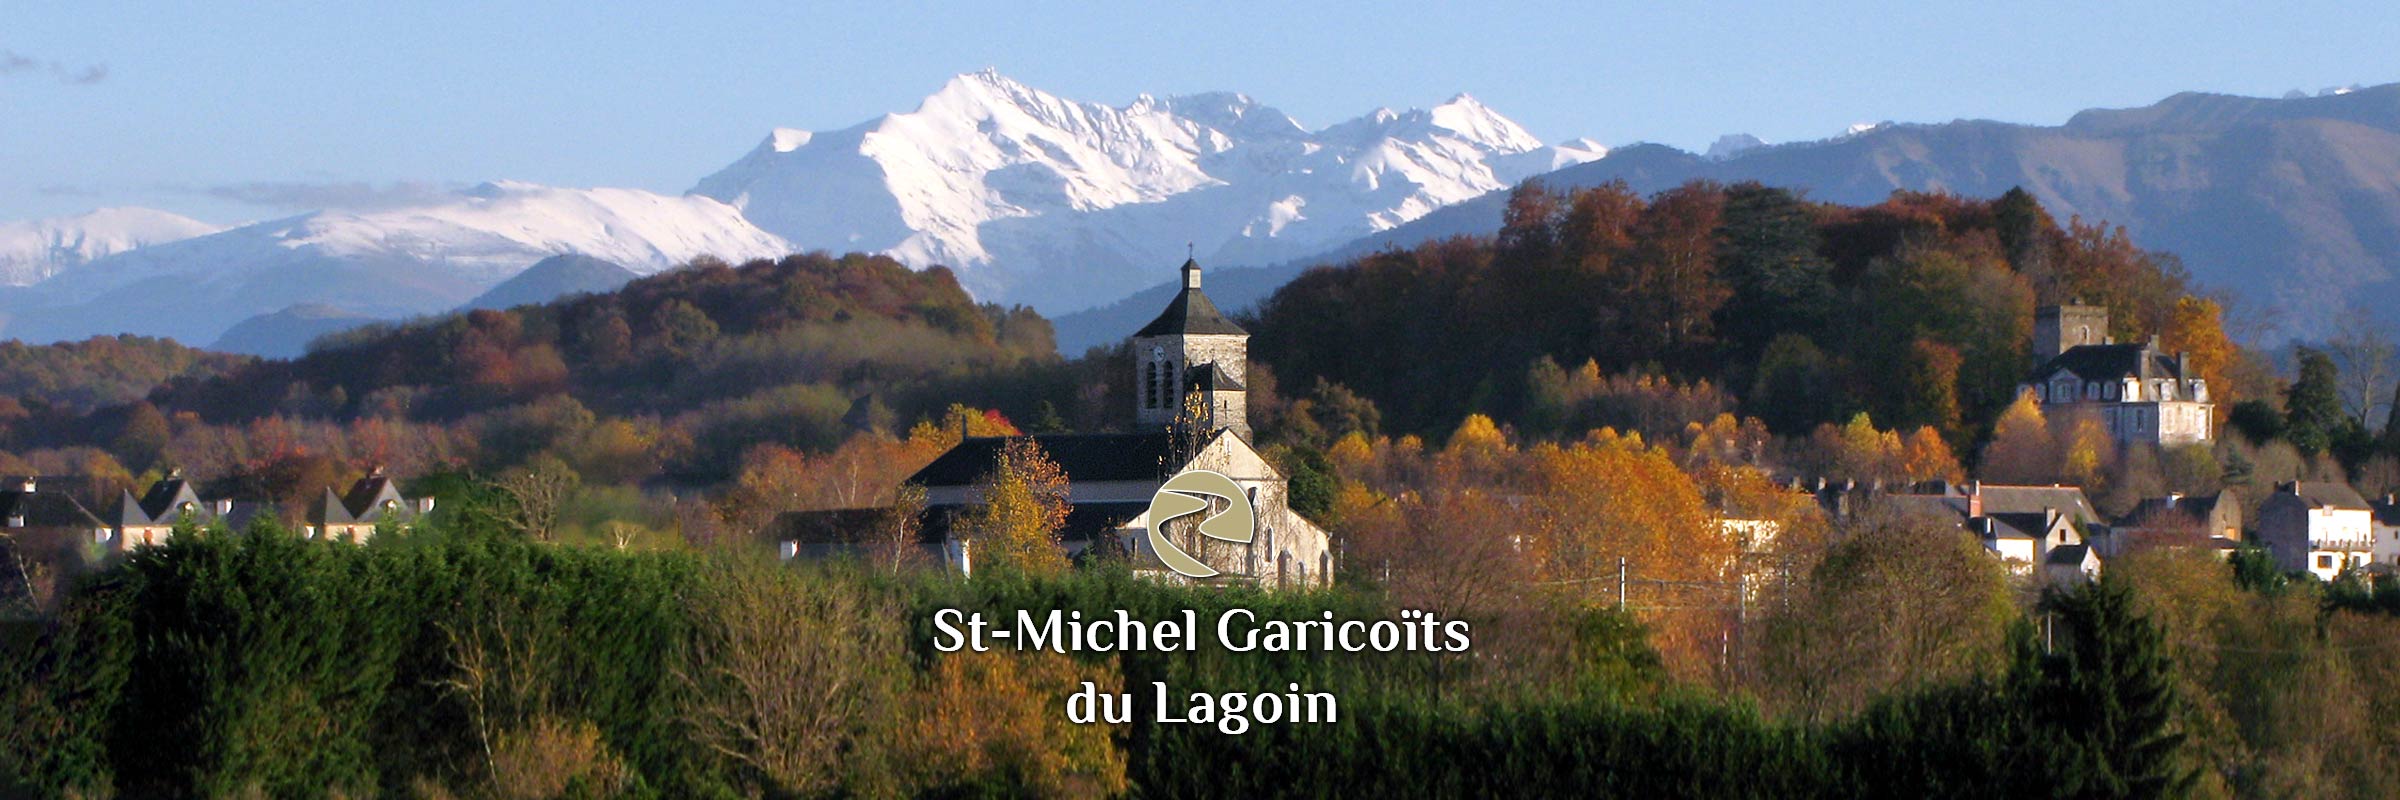 St-Michel Garicoïts du Lagoin